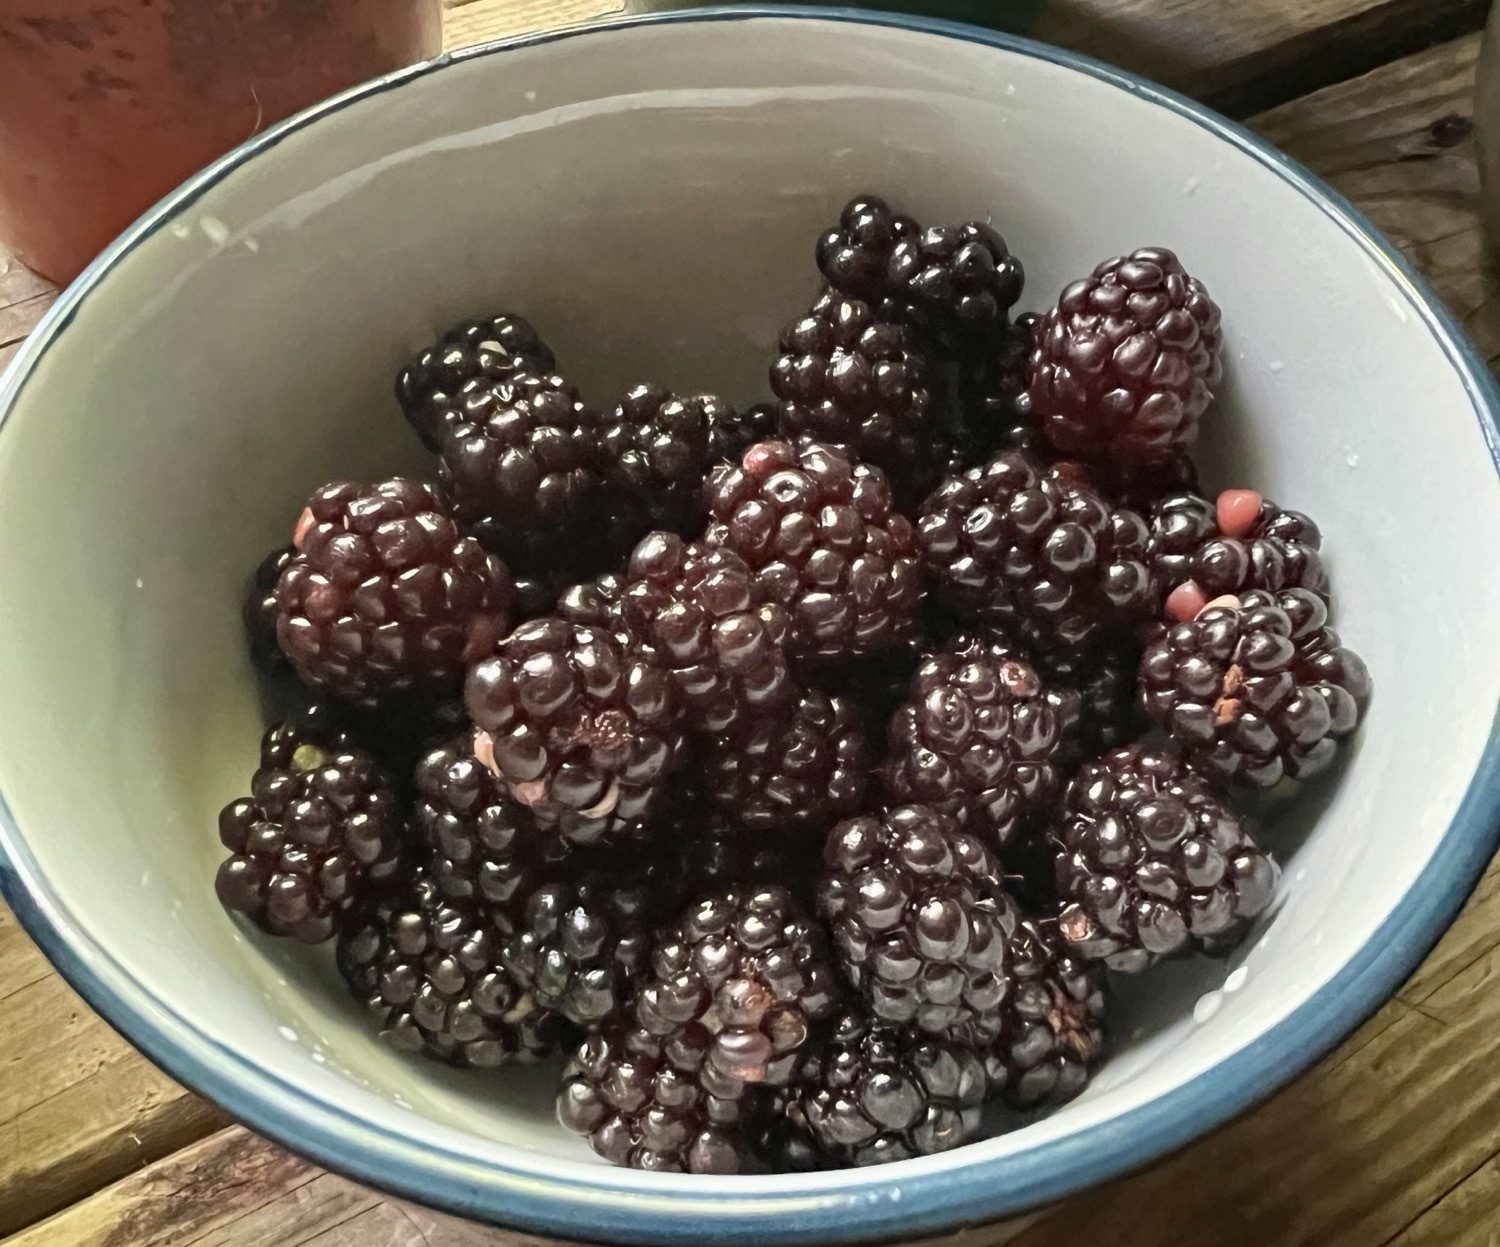 A small white porcelain bowl full of ripe blackberries